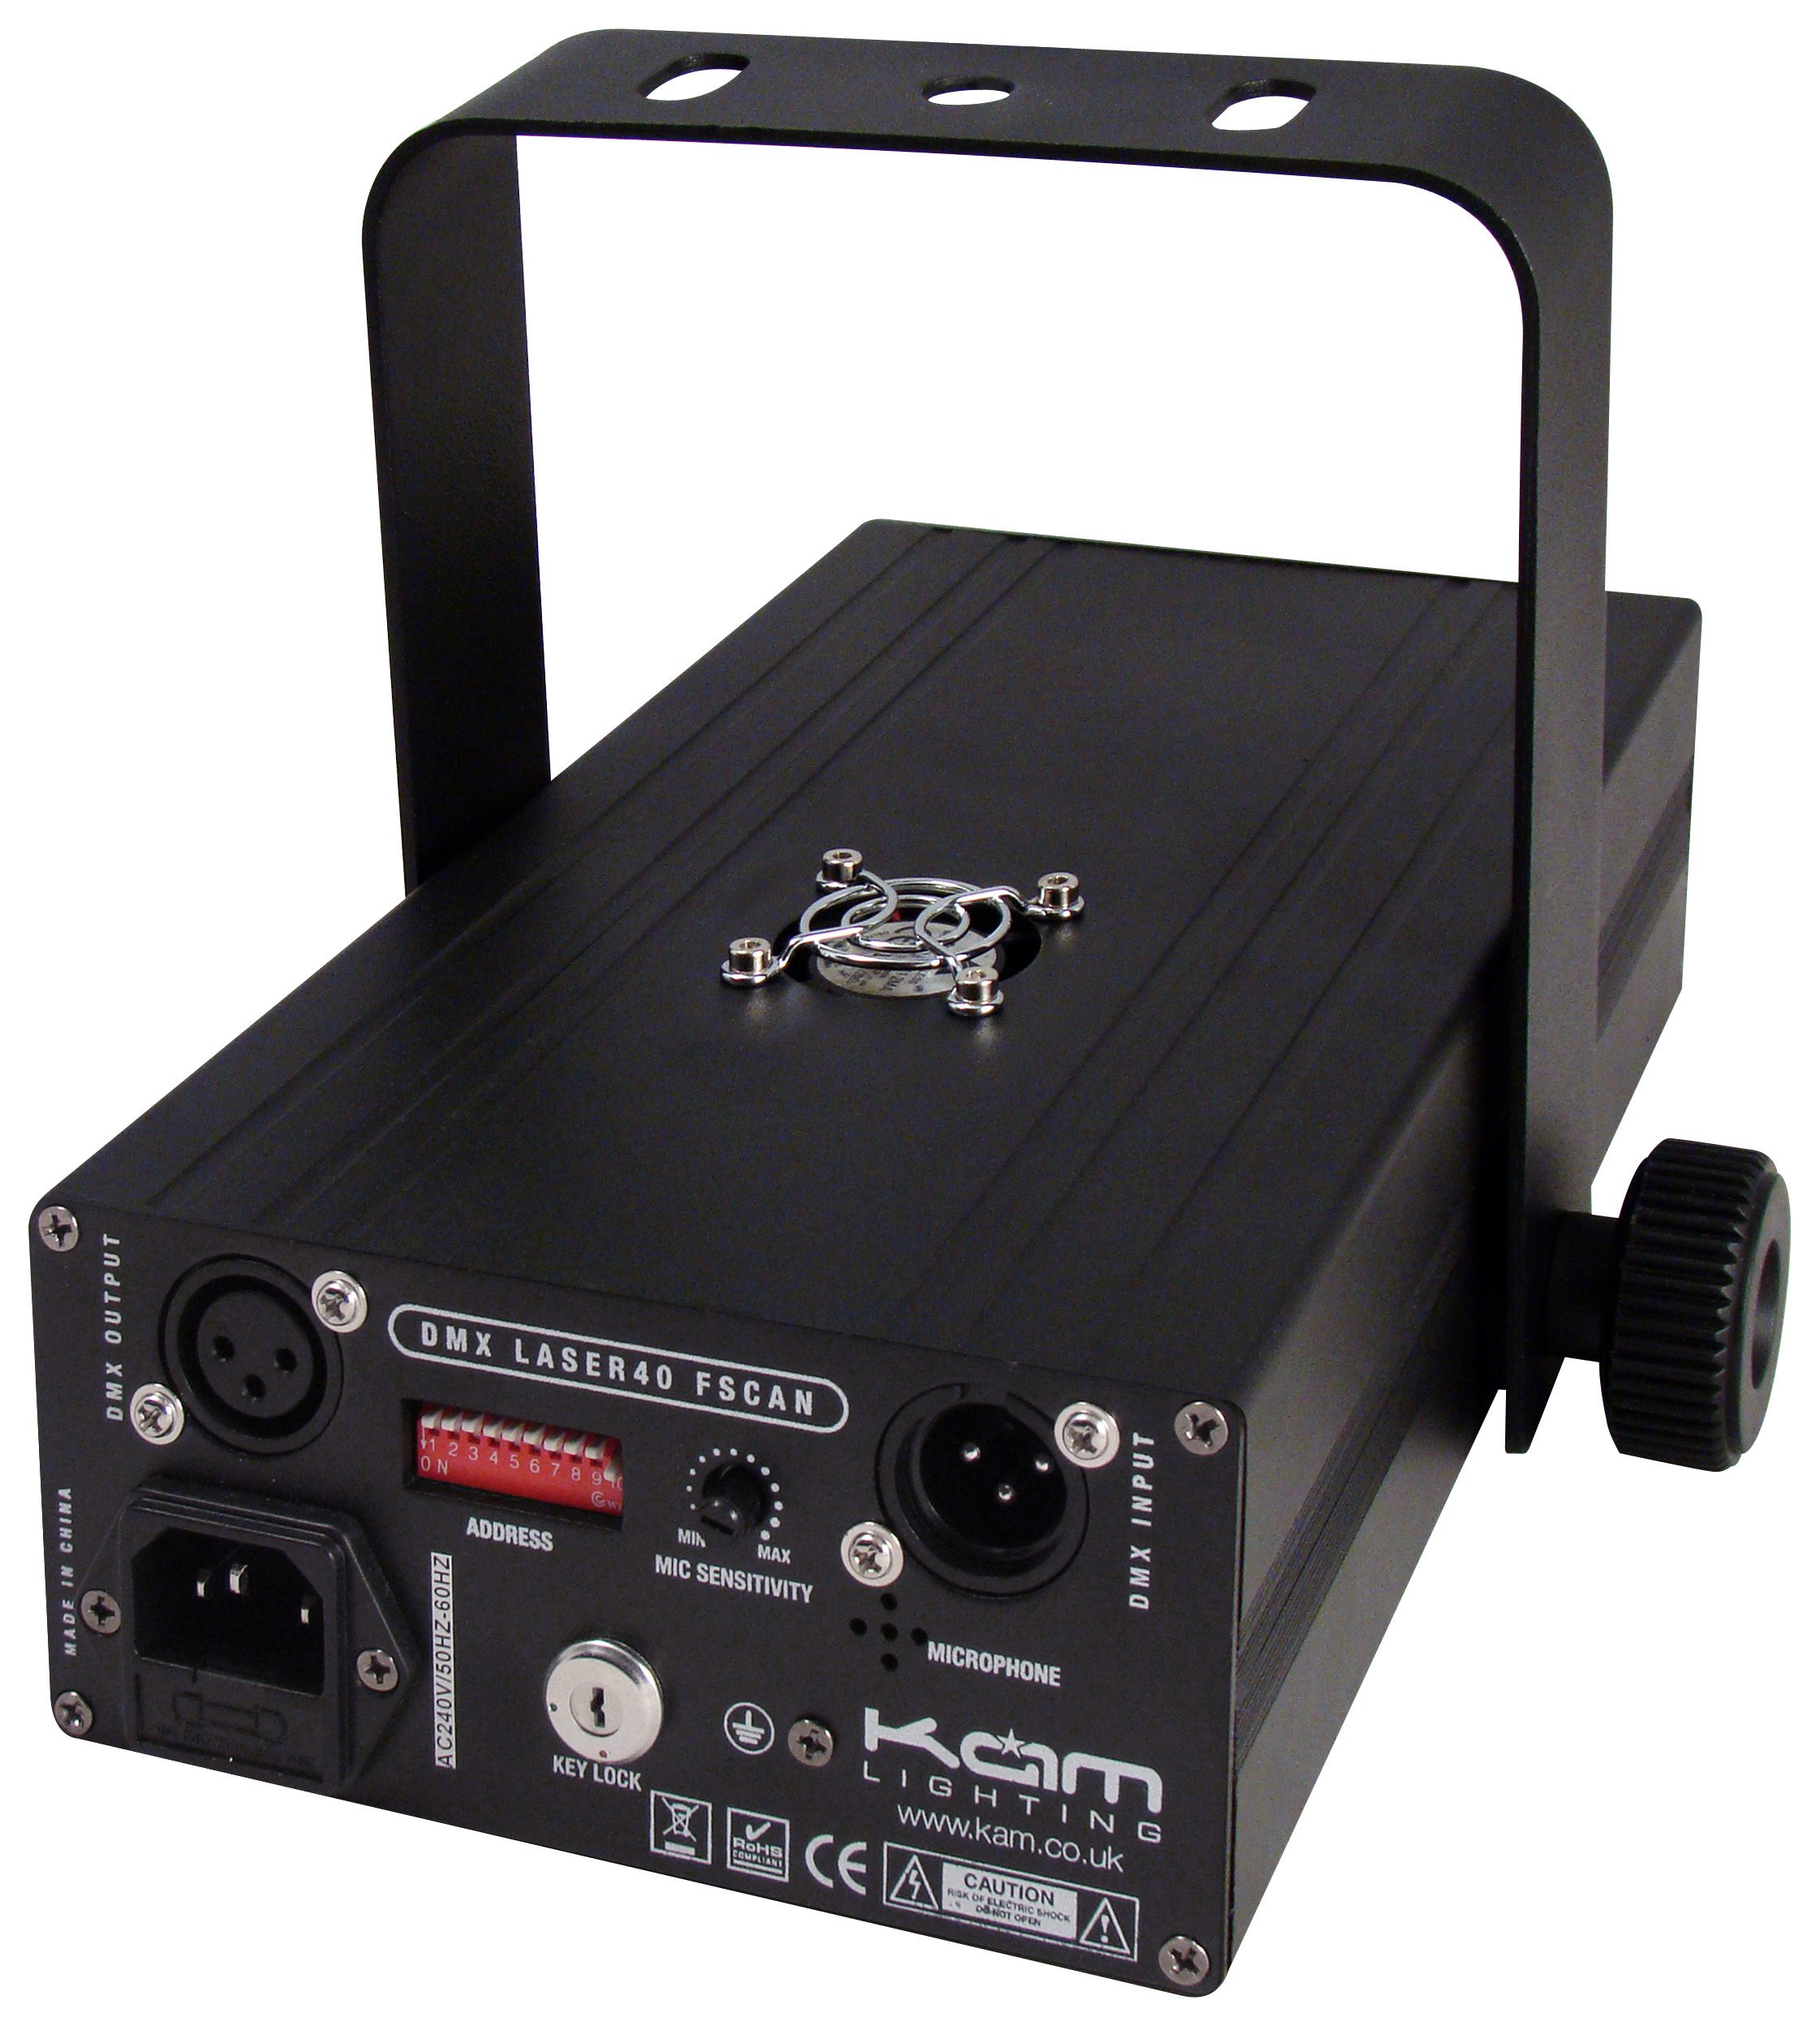 KAM DMX Laser 40 FScan High Power Scanning Laser (Back)